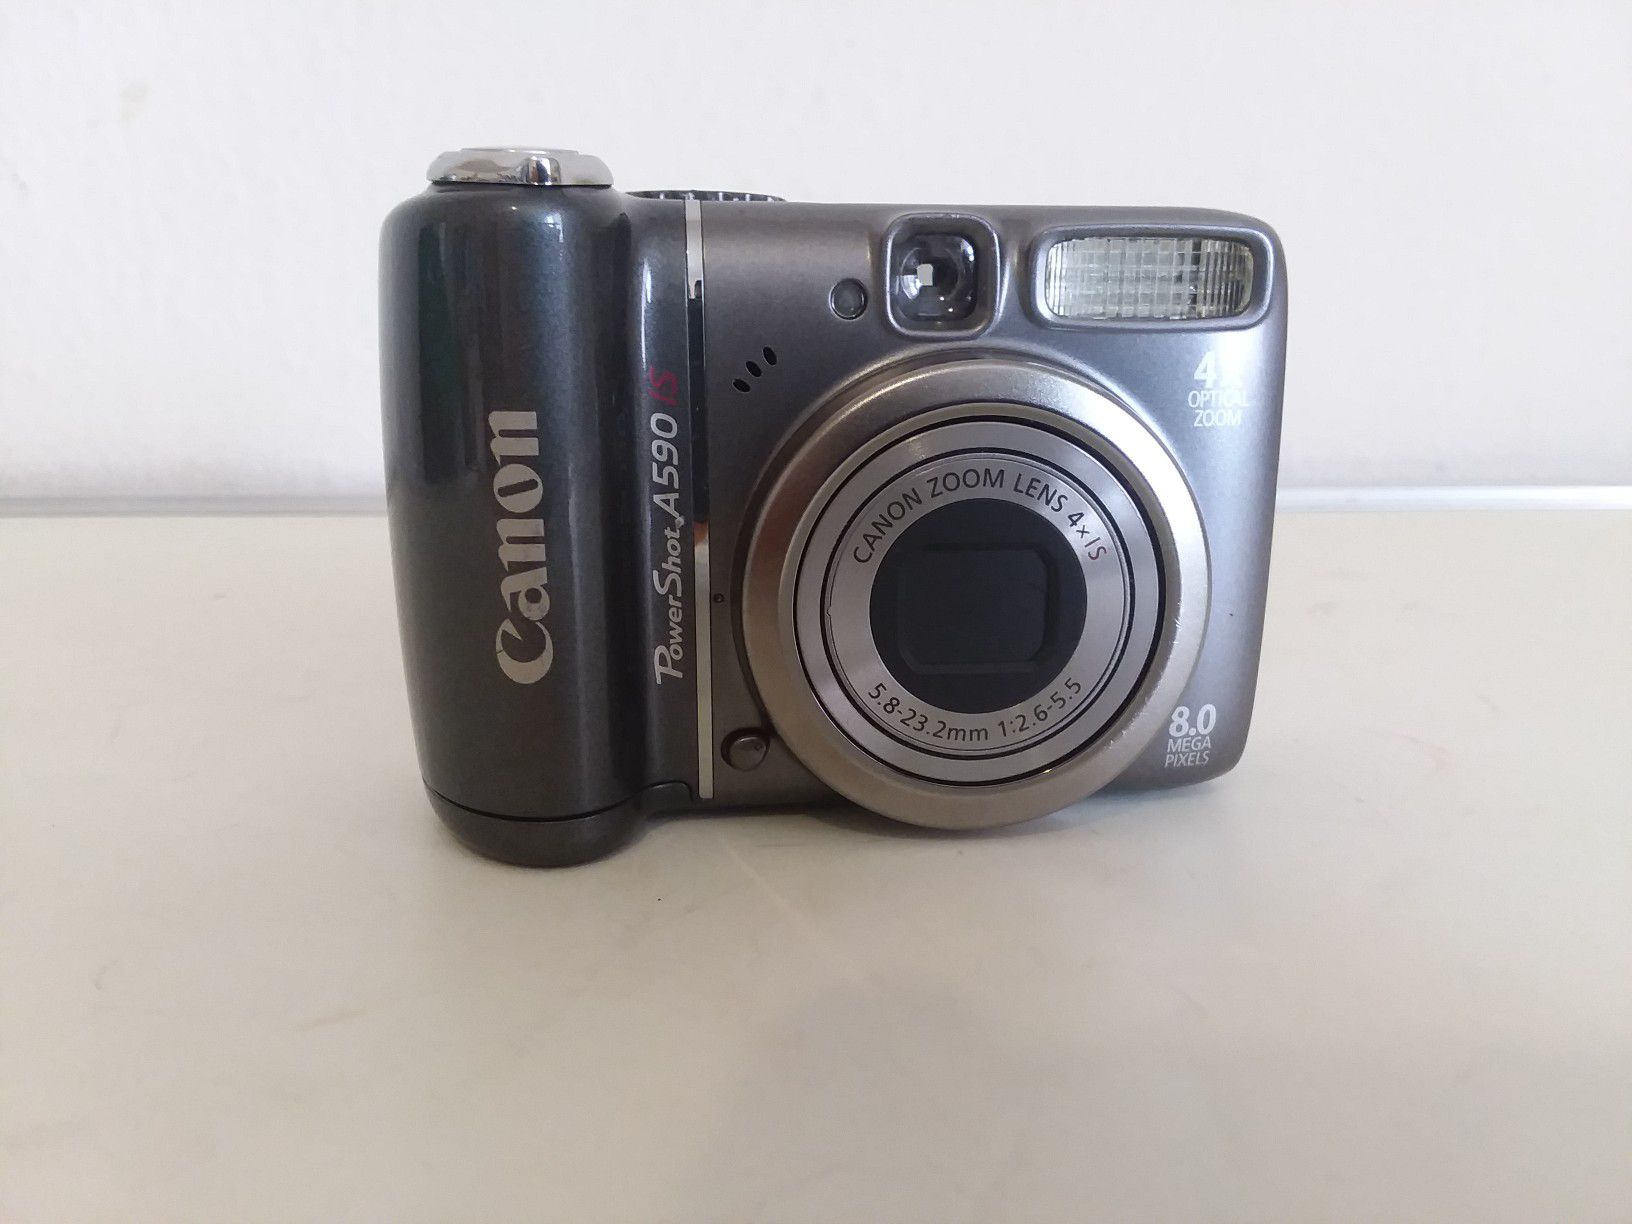 Canon PowerShot A590 Digital Camera 8.0 MegaPixels